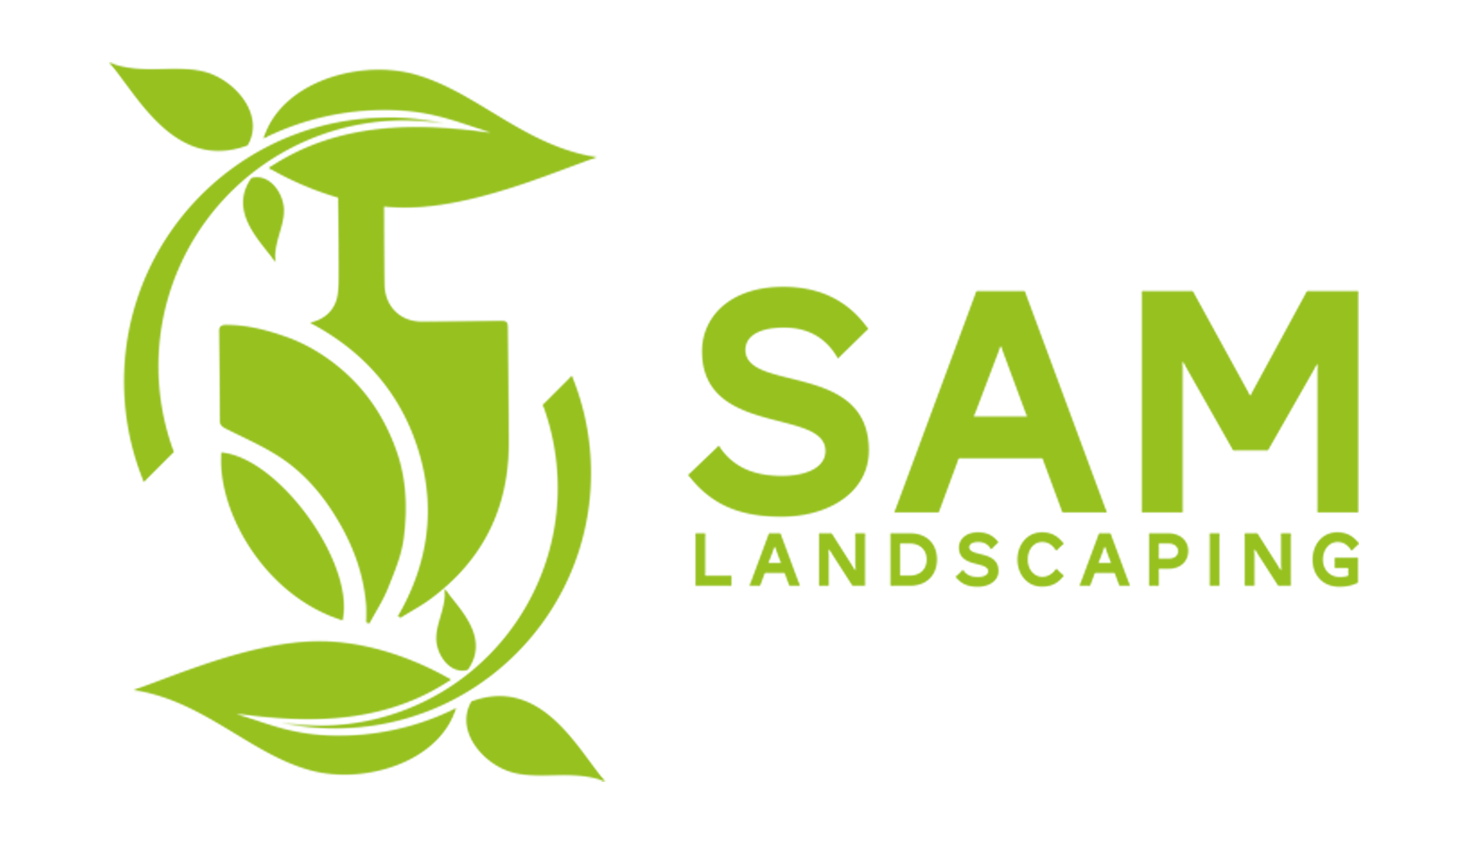  landscapingsam.com